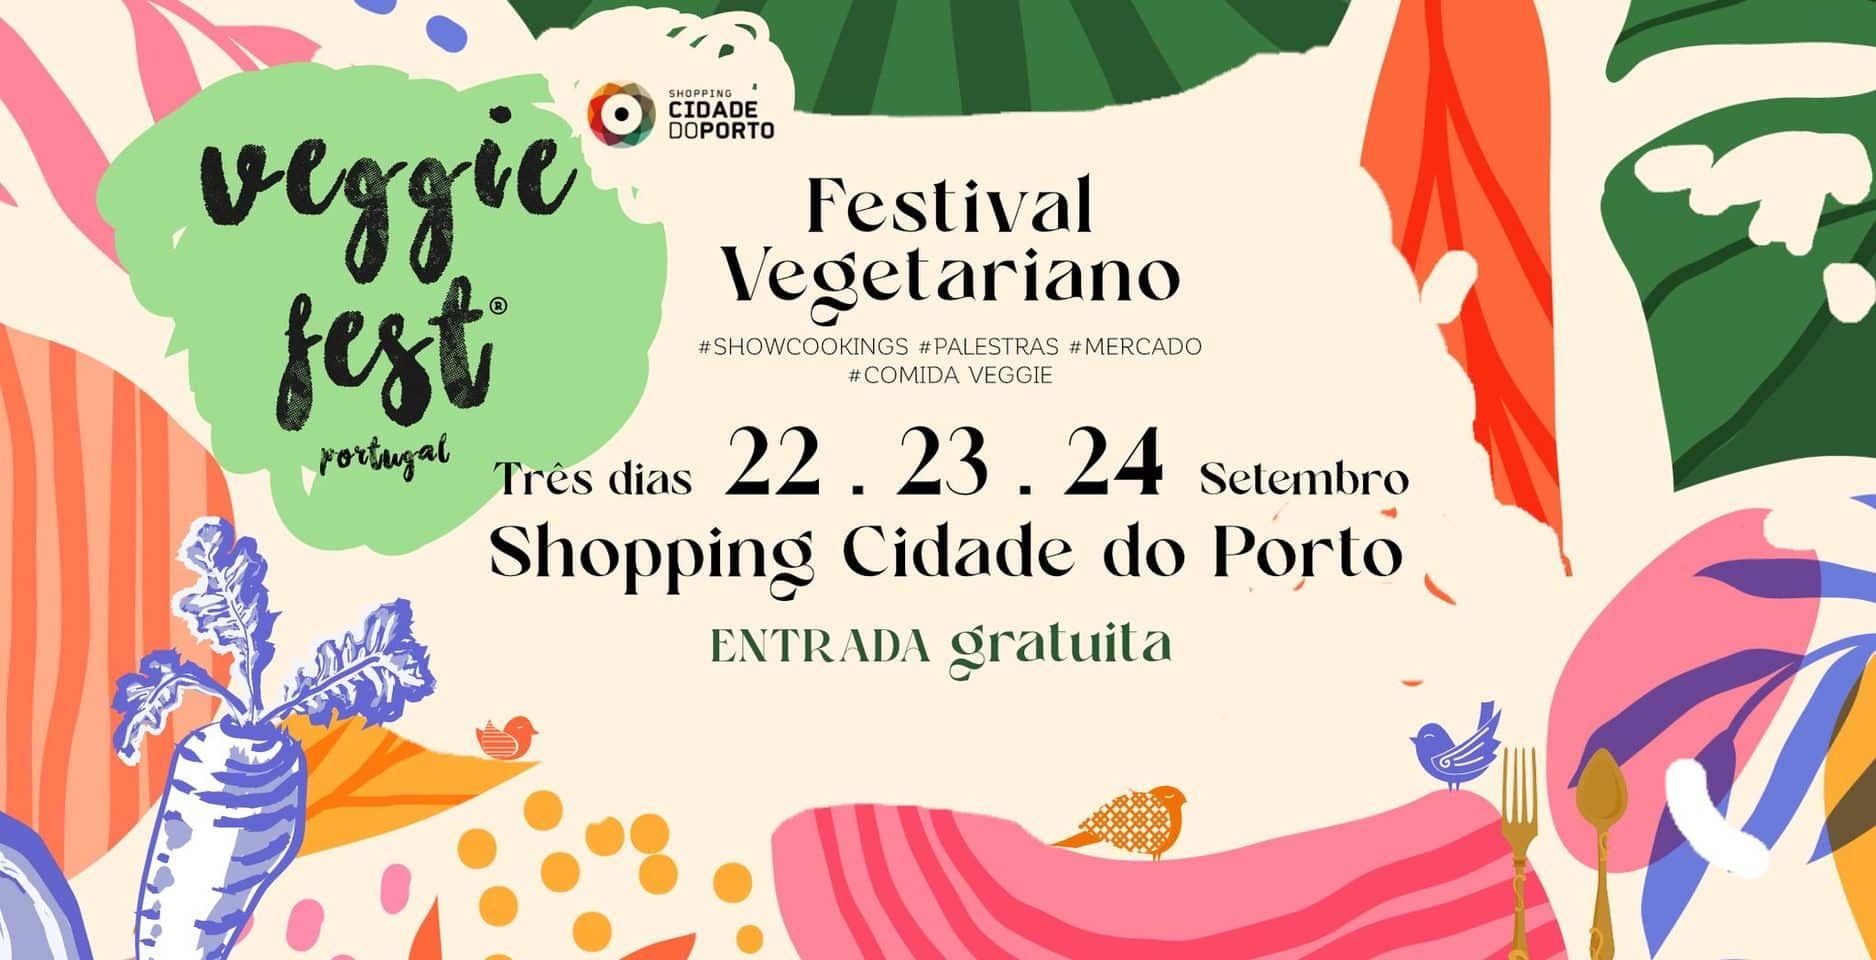 Veggie Fest - Festival Vegetariano - Shopping Cidade do Porto